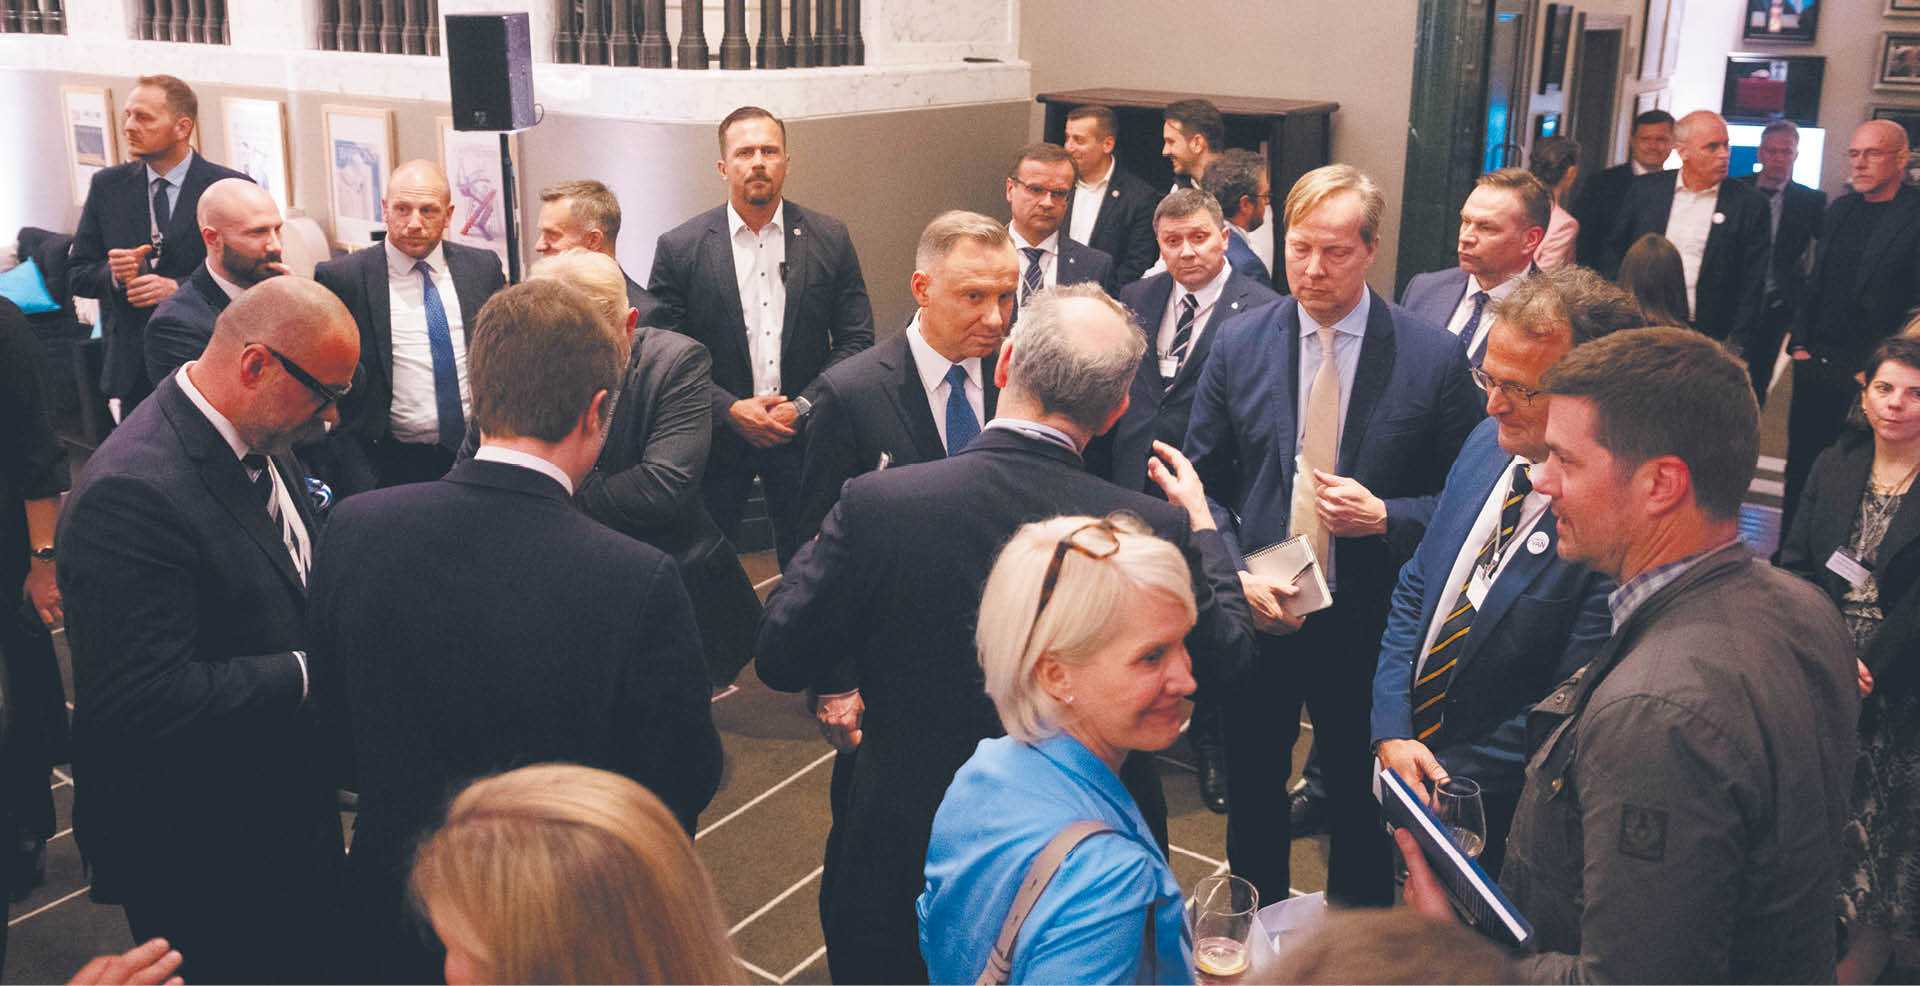 W kuluarach wydarzenia spotkali się przedstawiciele biznesu i polityki. Na zdjęciu m.in. Andrzej Duda i Almar Latour